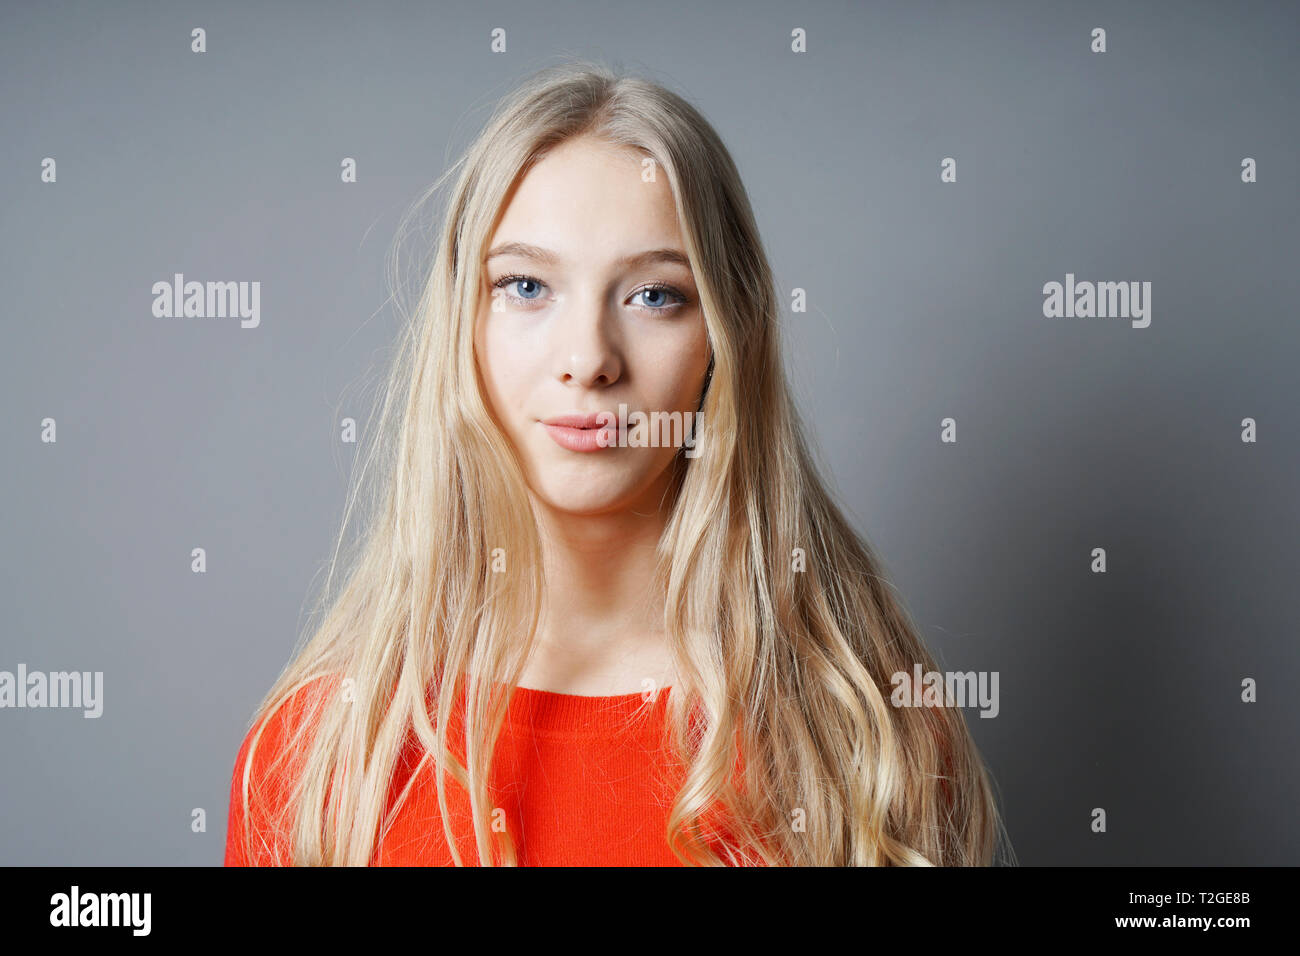 Junge Teenager Frau Mit Langen Blonden Haare Blasse Haut Und Blauen Augen Vor Grauem Hintergrund Mit Kopie Raum Stockfotografie Alamy